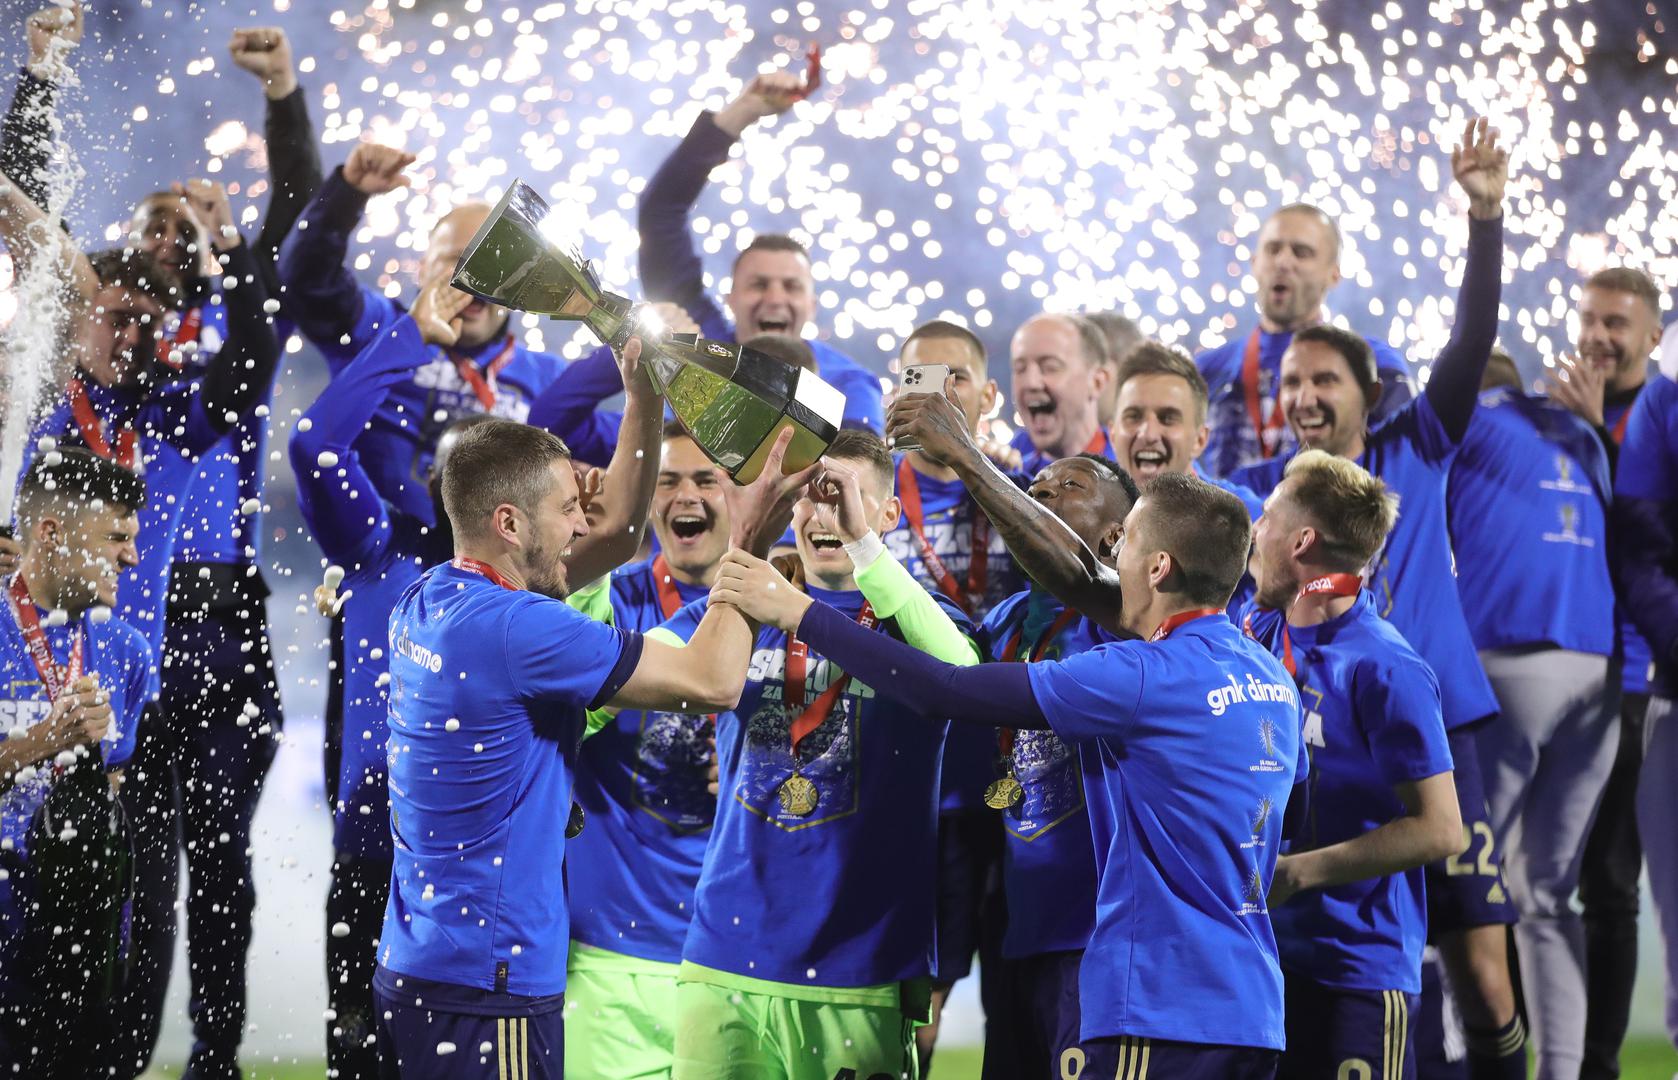 Plavi su već ranije osigurali naslov prvaka, no danas je bila službena proslava